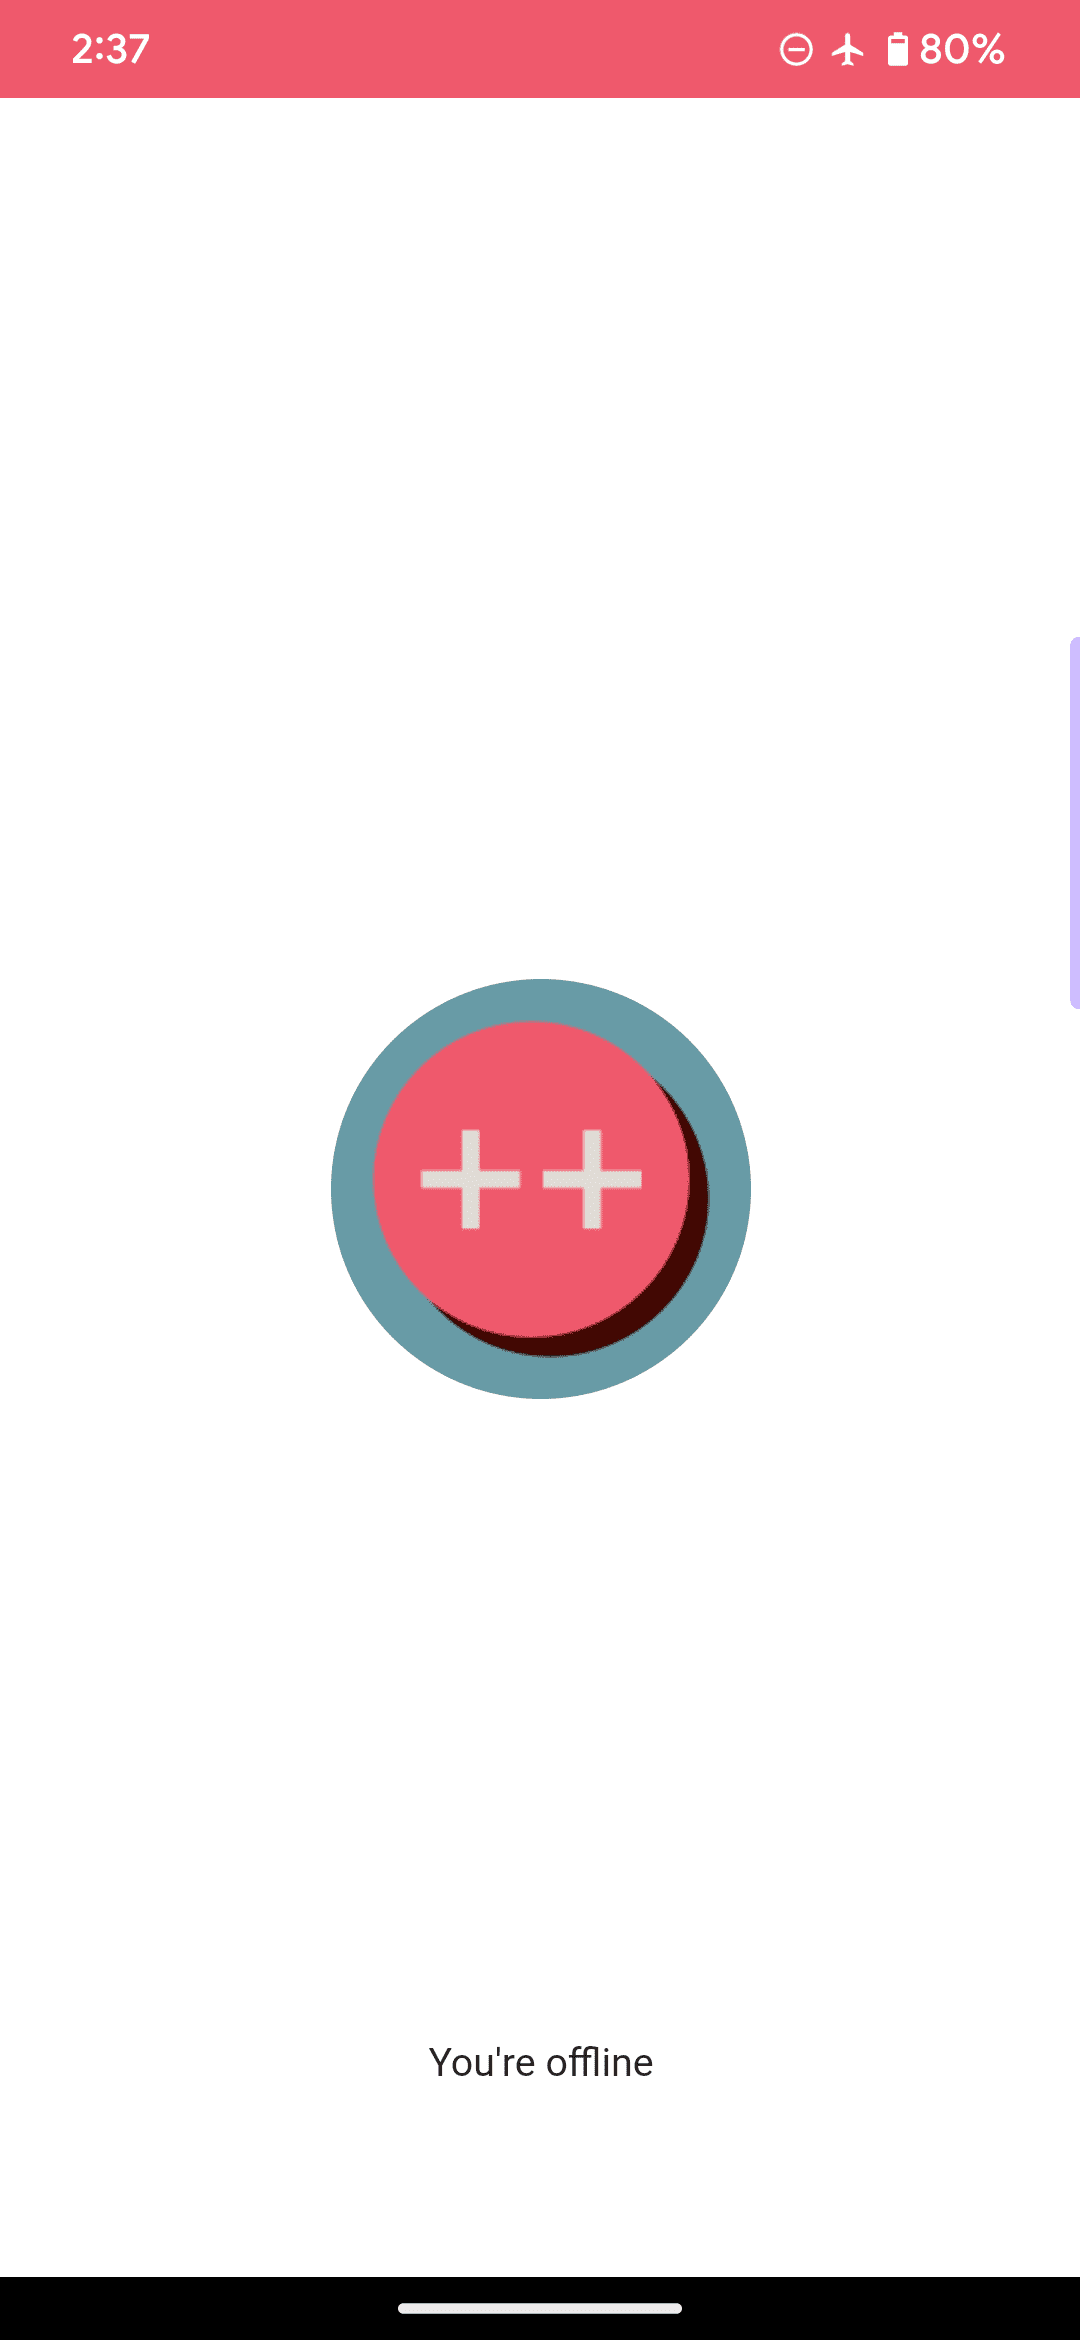 Es la página sin conexión predeterminada para una aplicación web de ejemplo, en la que el logotipo es un círculo rosa y dos signos más, e incluye el mensaje &quot;estás sin conexión&quot;.